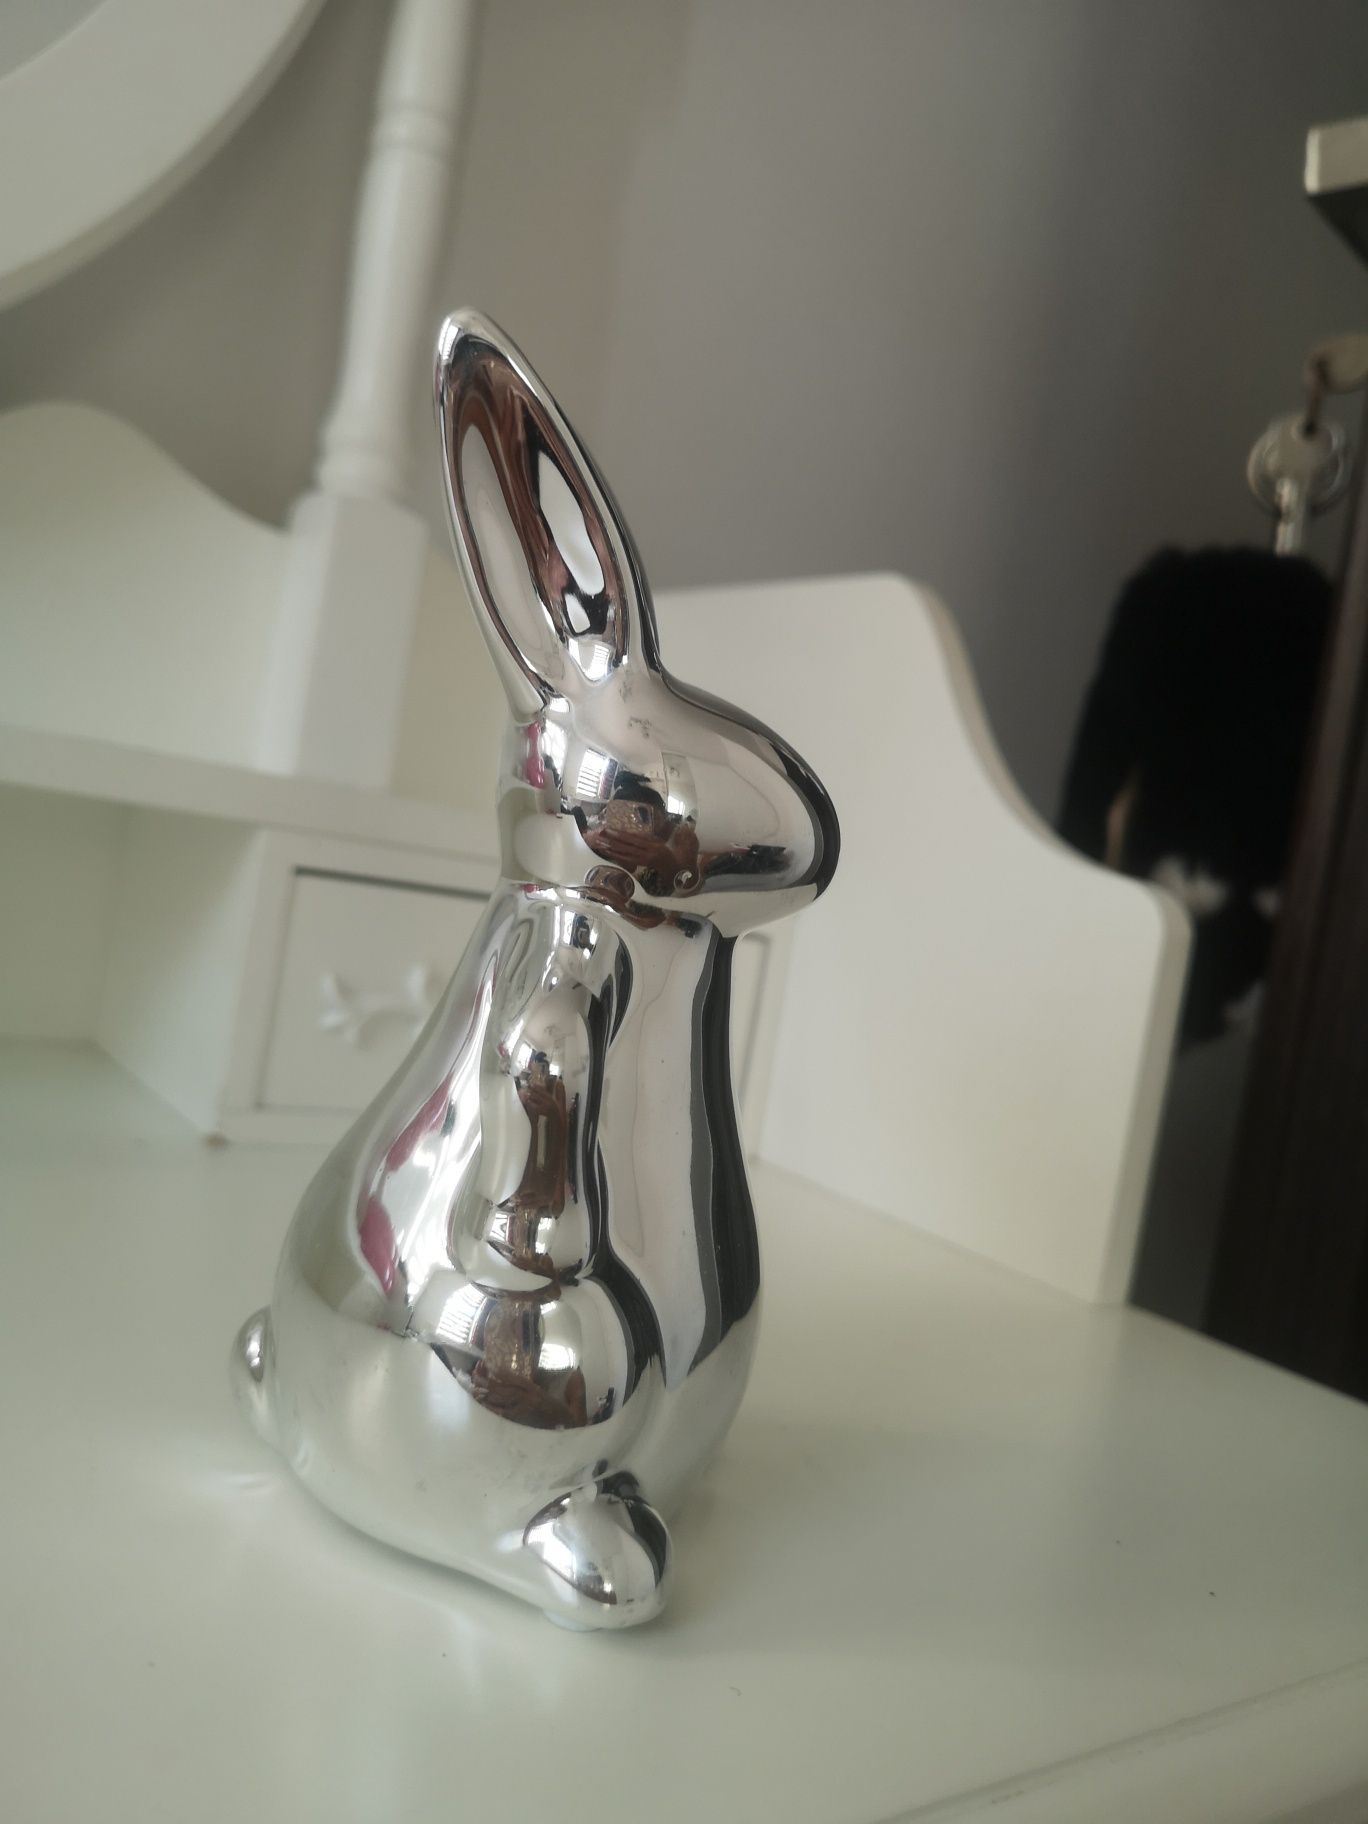 Figurka srebrny zajączek królik lustrzany